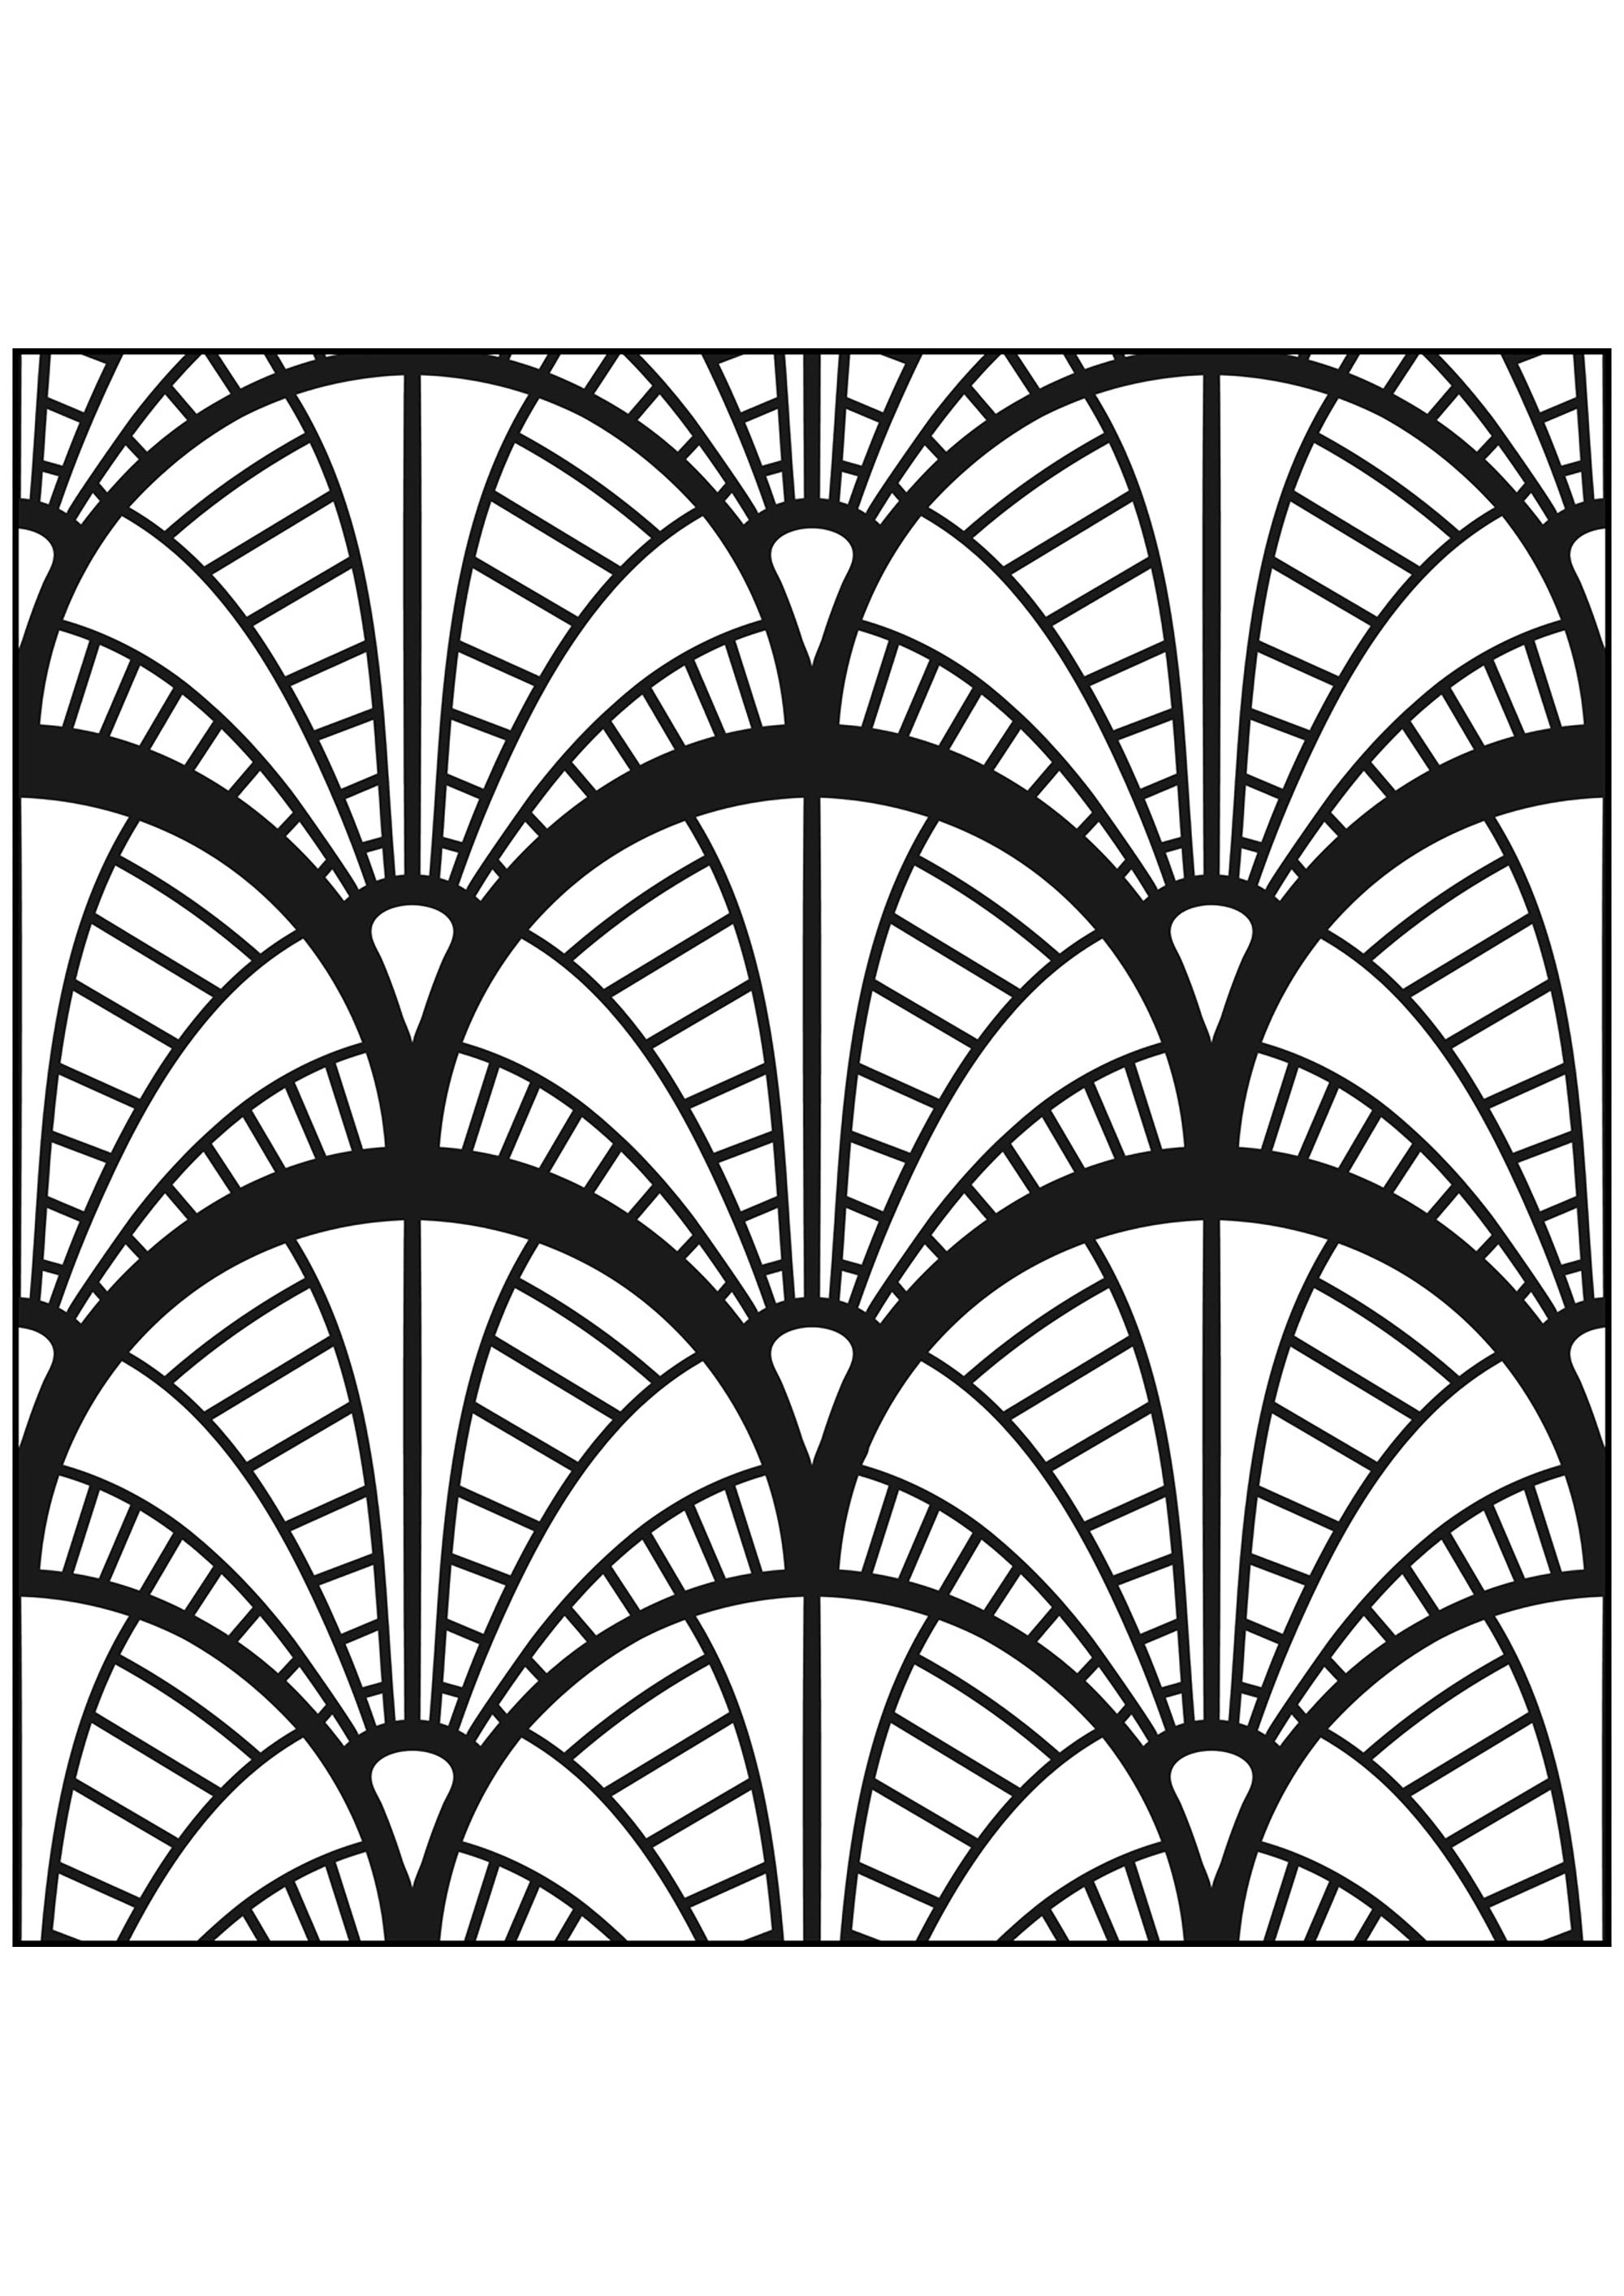 Art-Déco-Motive nach dem Vorbild des New Yorker Chrysler Buildings. Tauchen Sie ein in das New York der 1930er Jahre mit diesem wunderschönen Farbspiel, Quelle : 123rf   Künstler : realwebicons